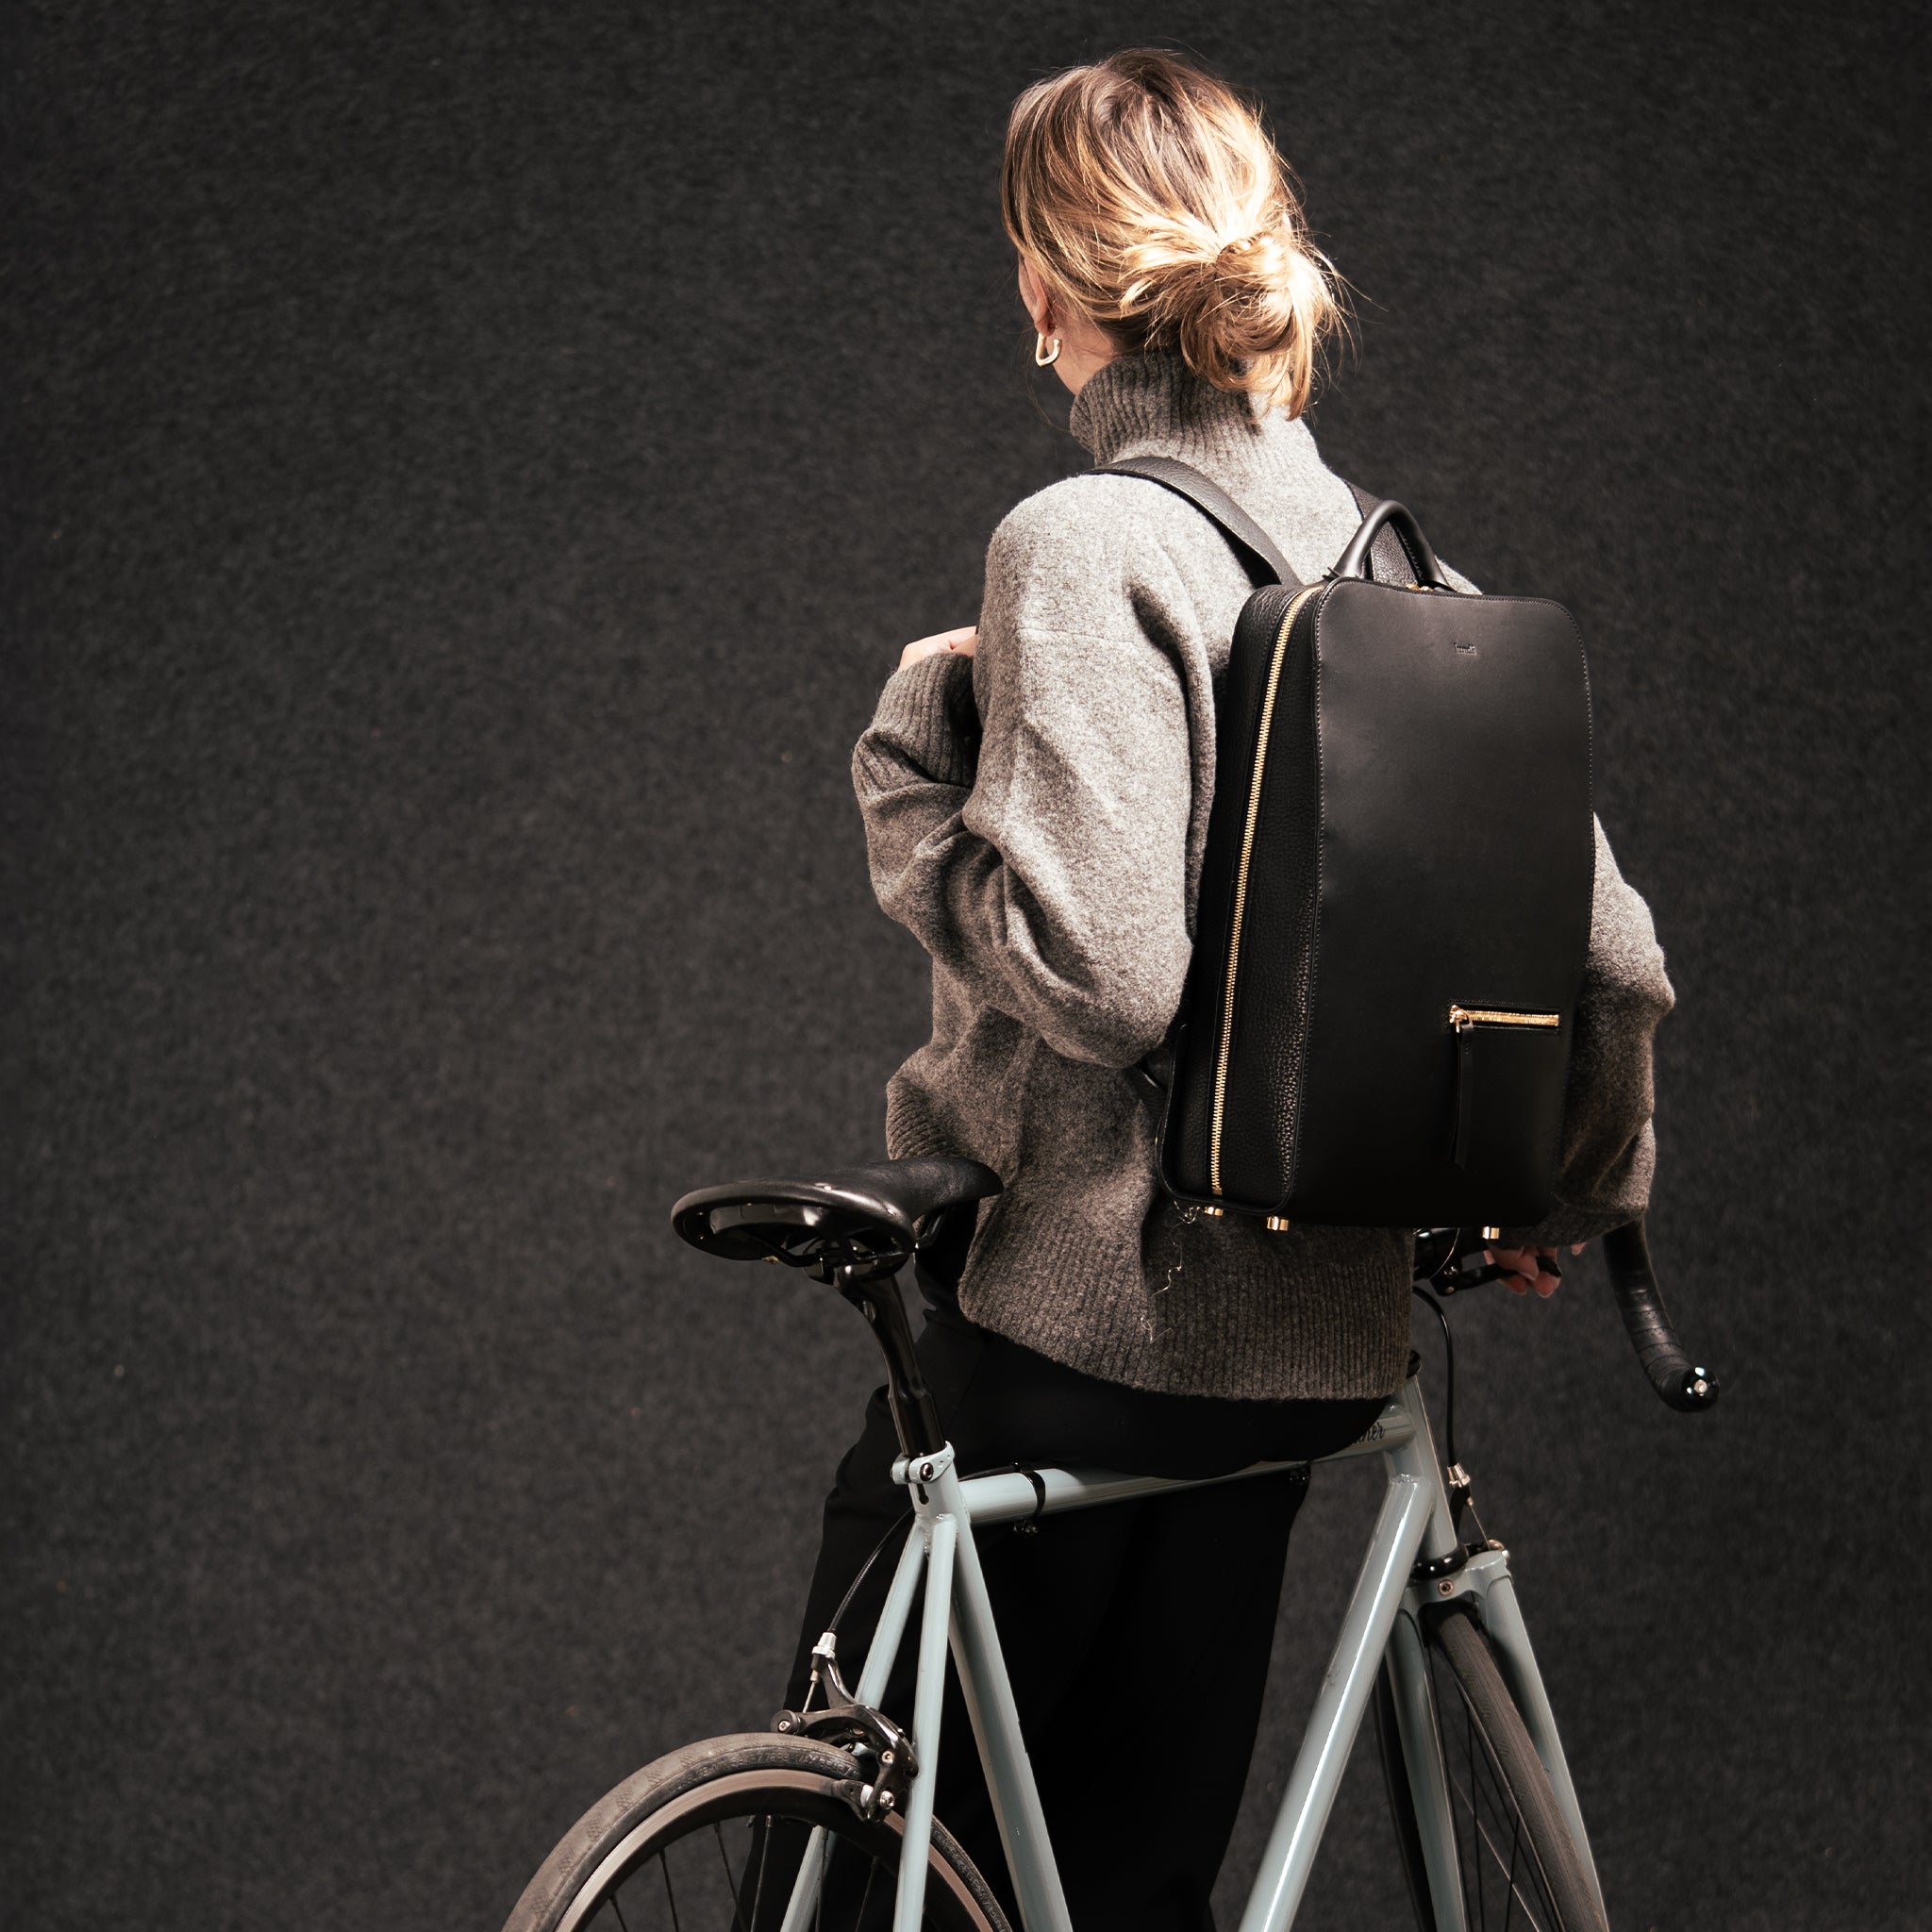 lundi Leather Backpack | Chiara Black